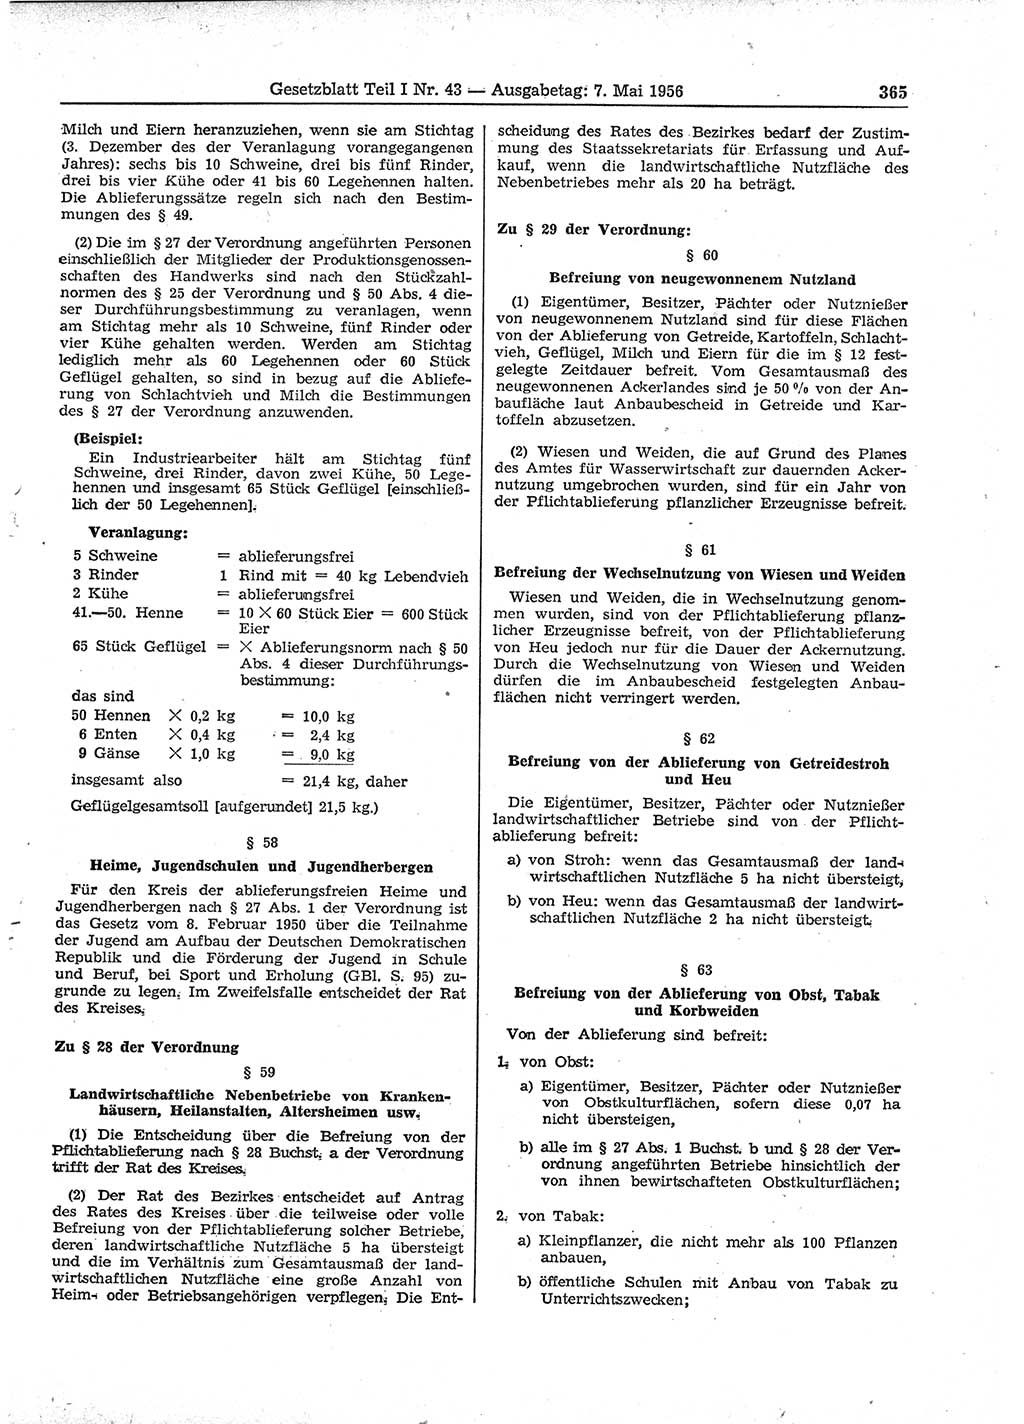 Gesetzblatt (GBl.) der Deutschen Demokratischen Republik (DDR) Teil Ⅰ 1956, Seite 365 (GBl. DDR Ⅰ 1956, S. 365)